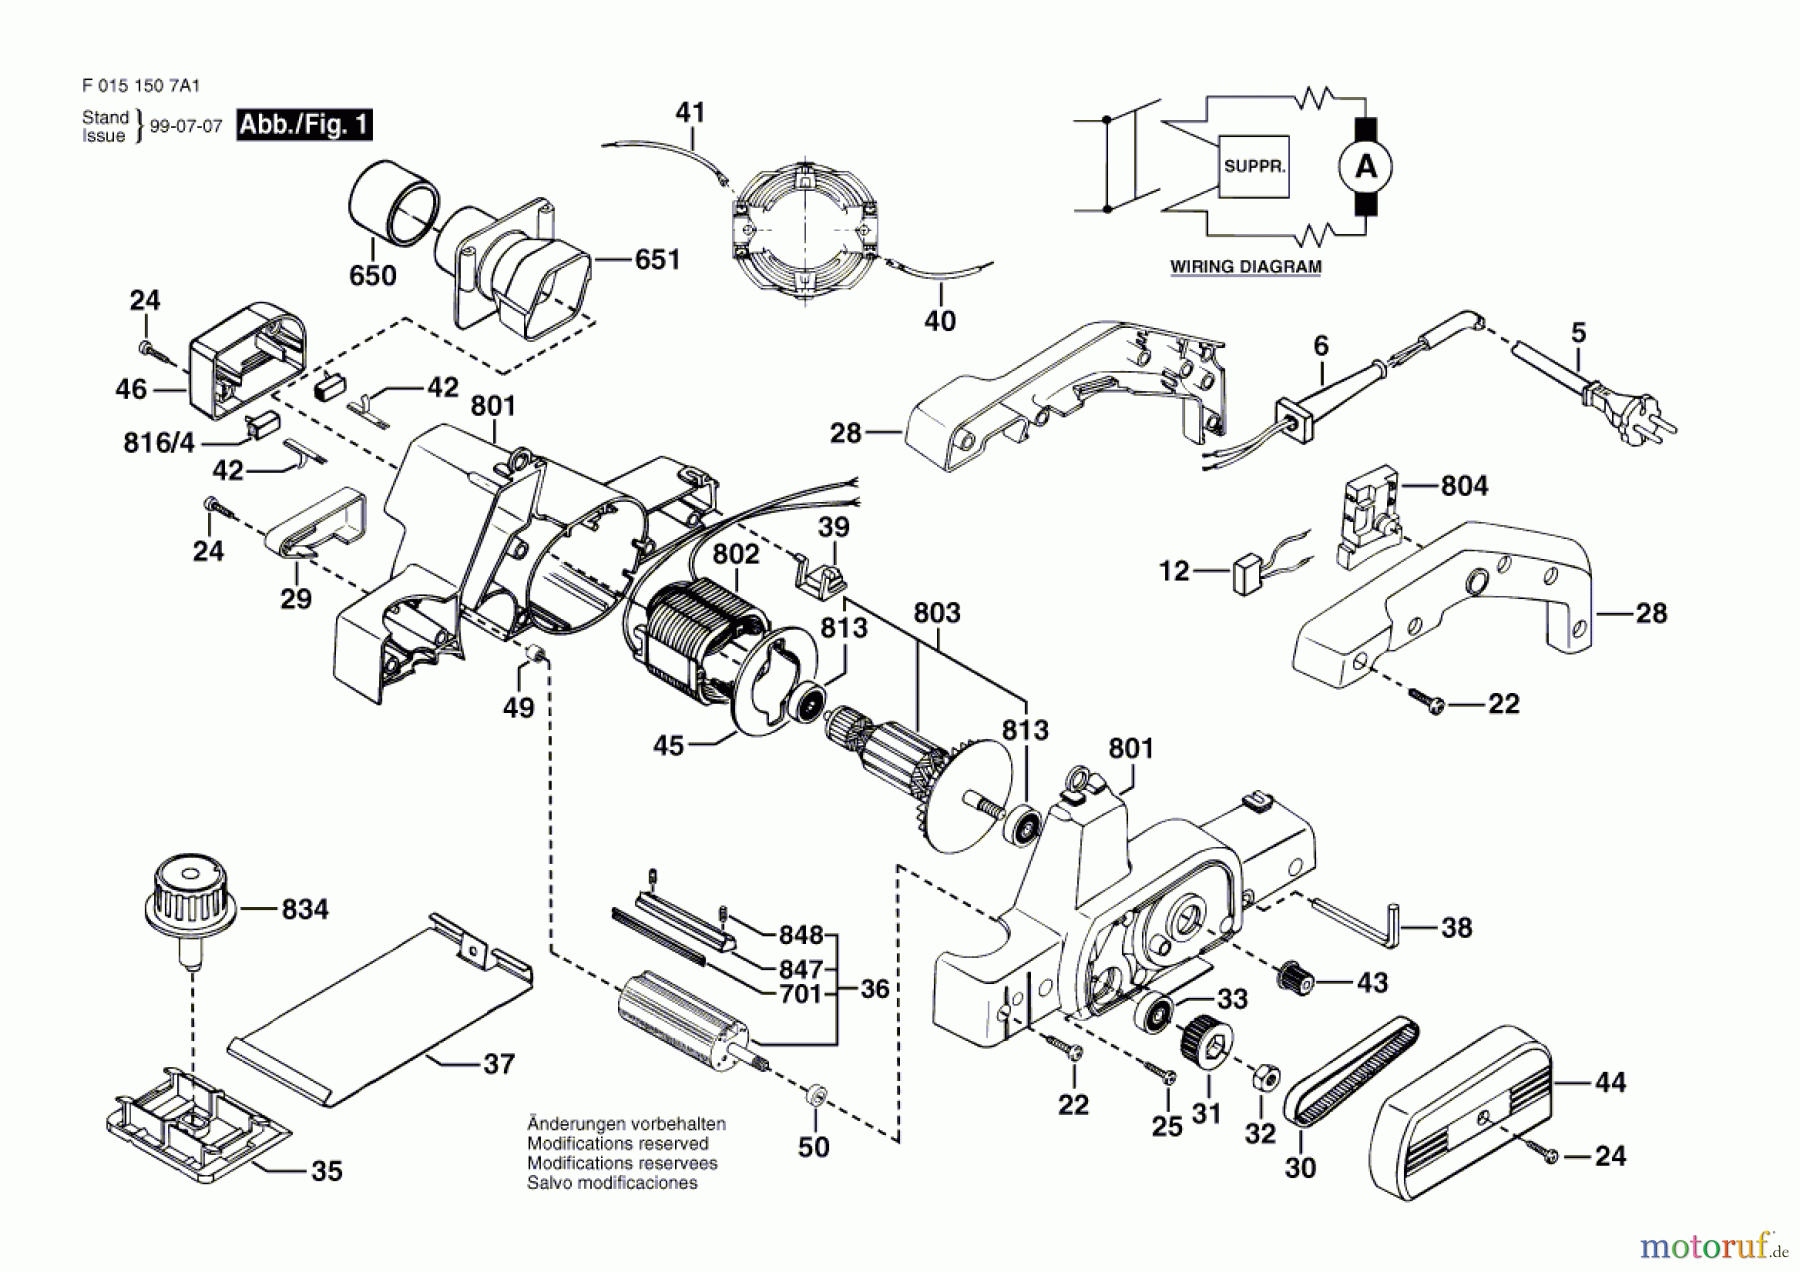  Bosch Werkzeug Handhobel 1507 Seite 1